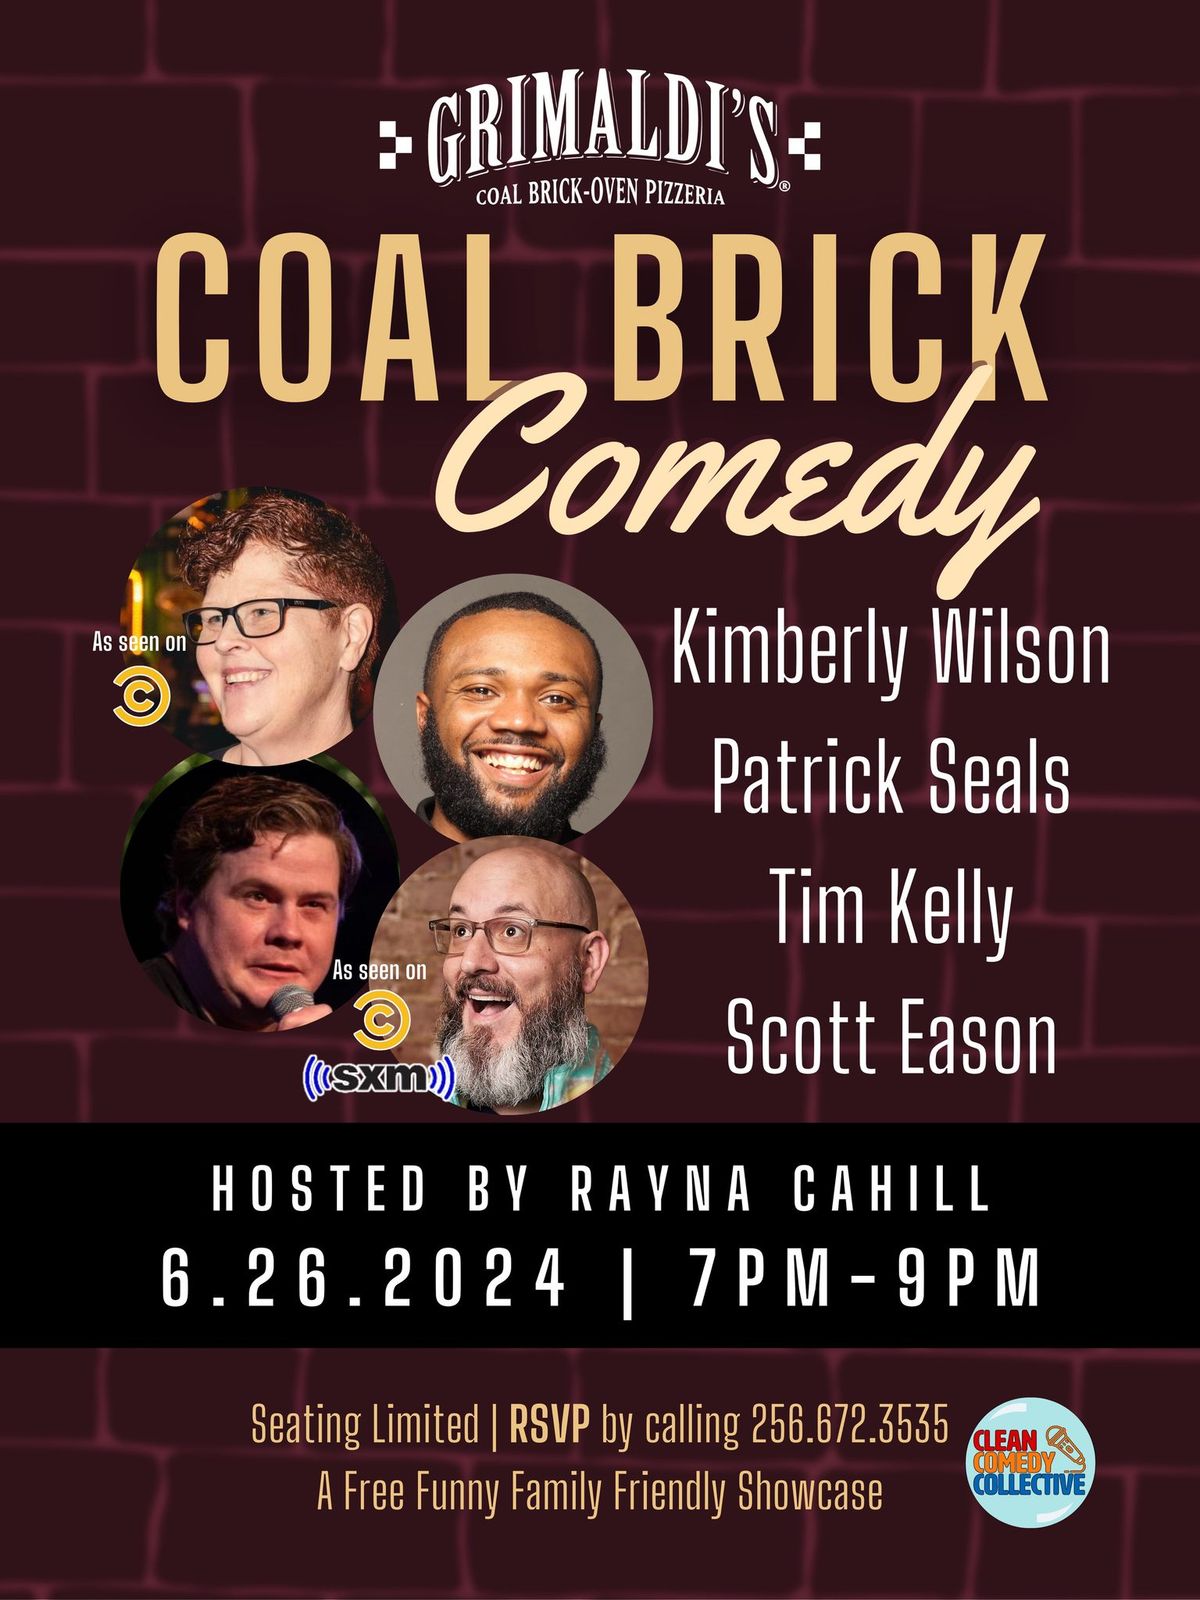 Coal Brick Comedy @ Grimaldi's